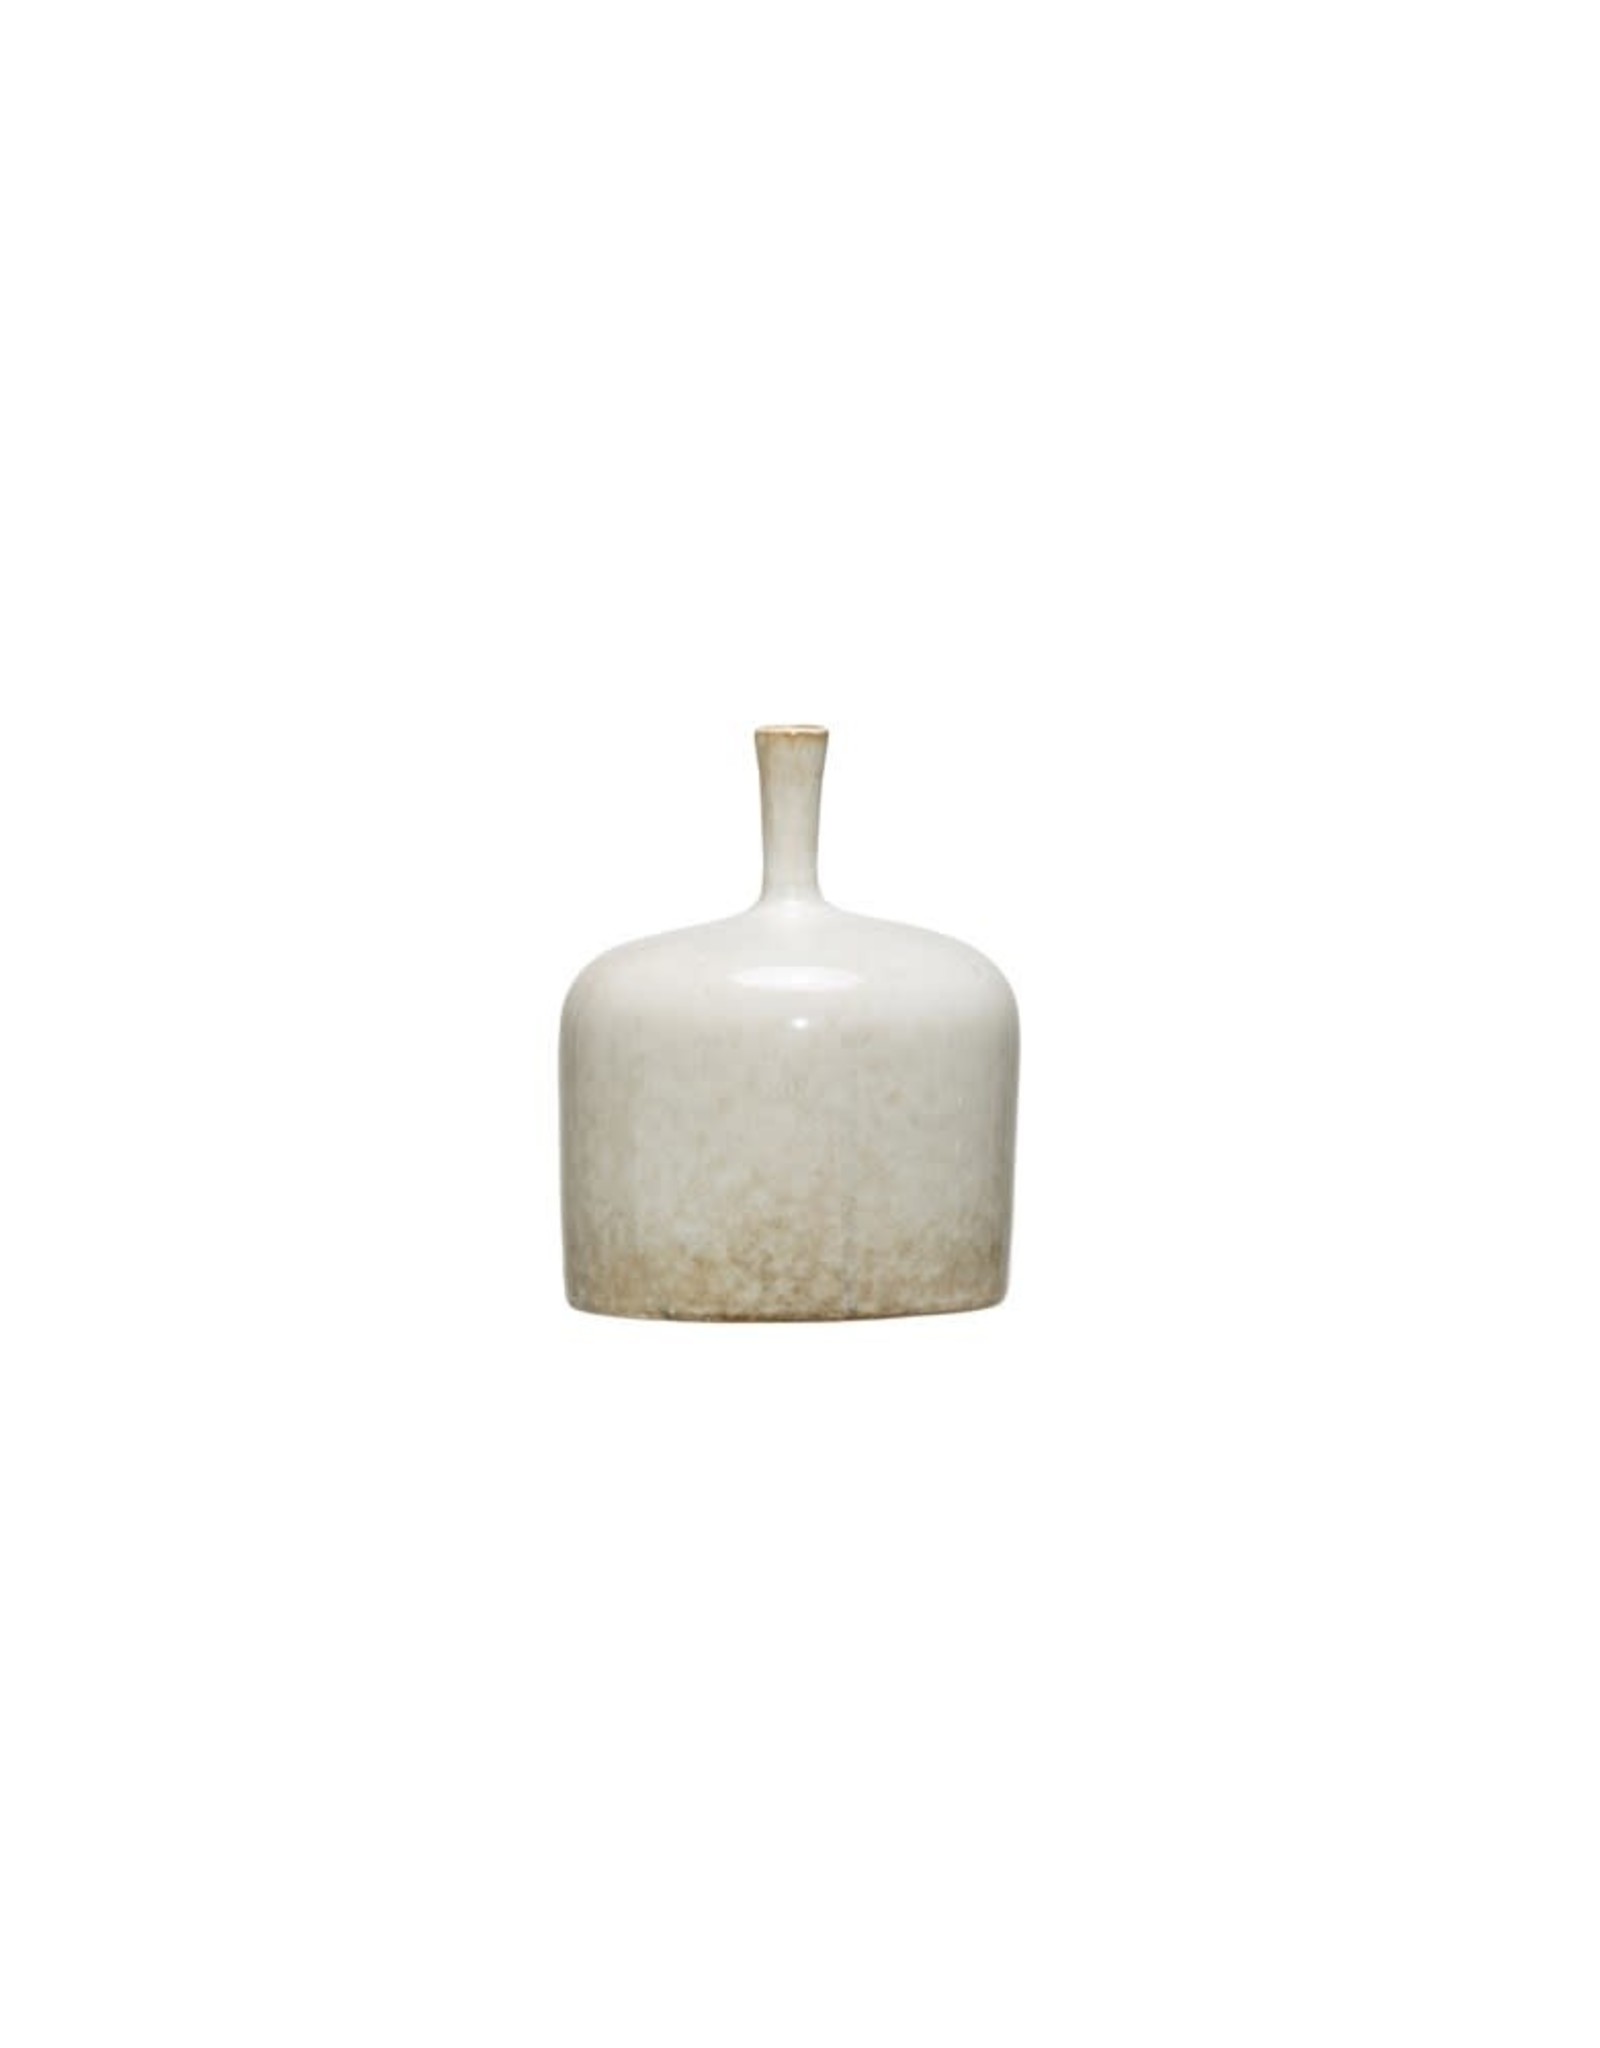 Vase White Narrow Neck 5 X 6